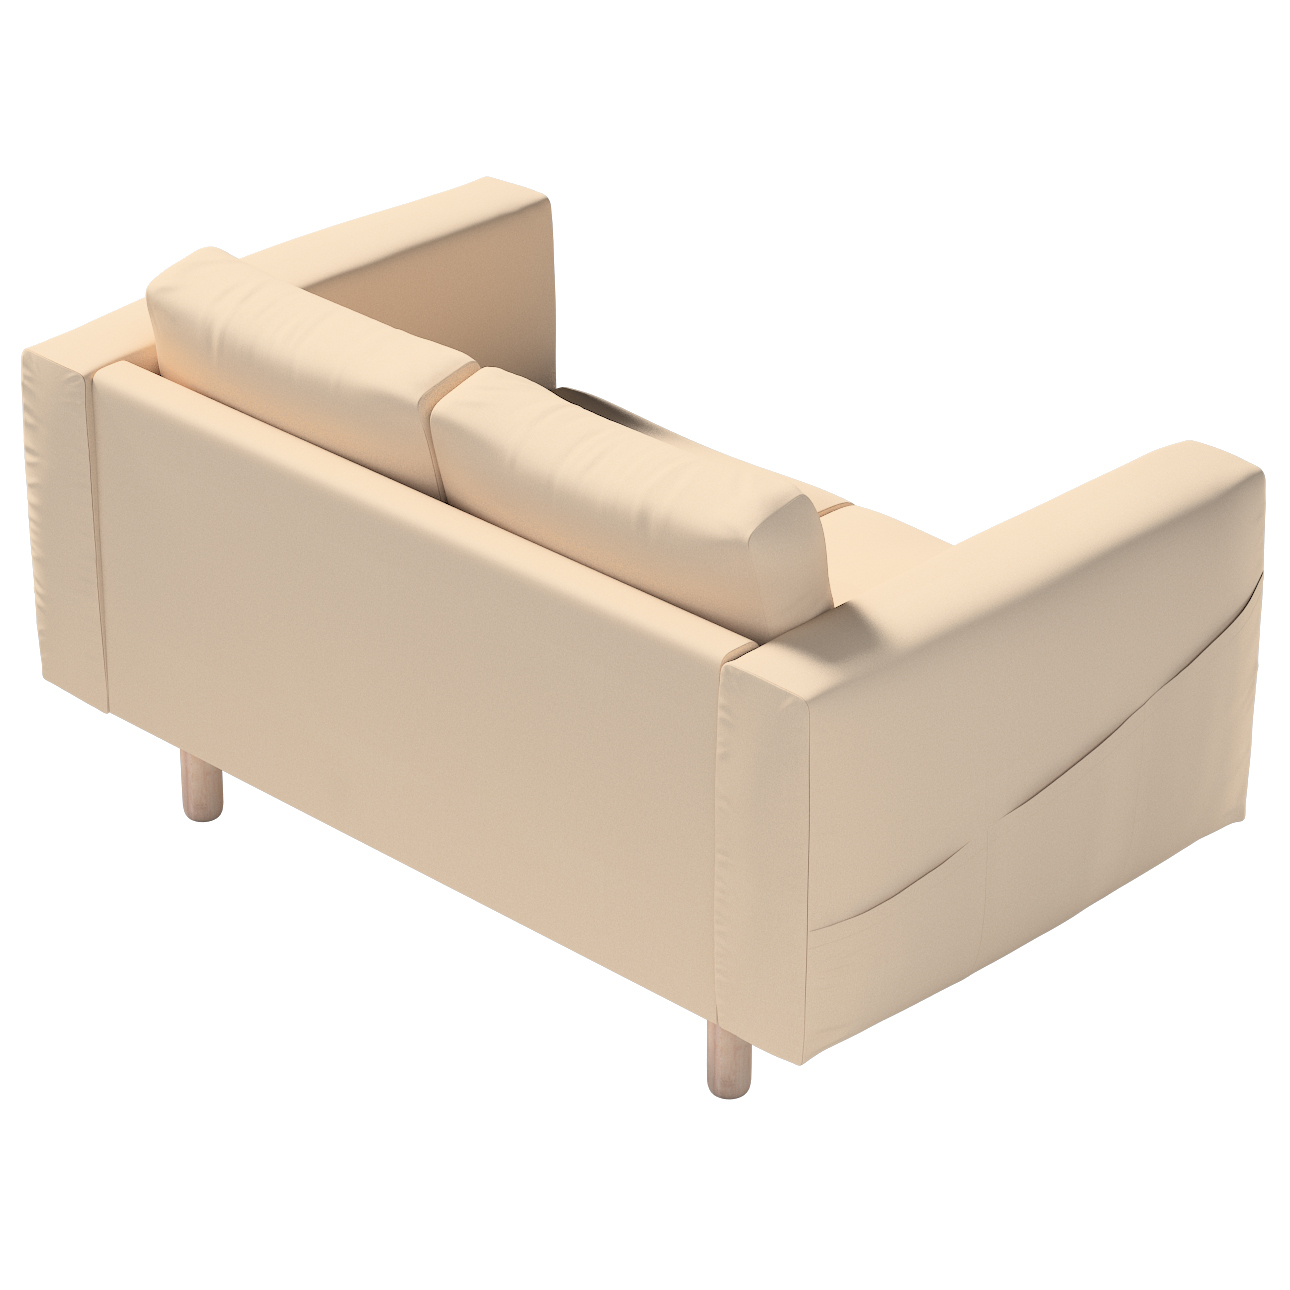 Bezug für Norsborg 2-Sitzer Sofa, creme-beige, Norsborg 2-Sitzer Sofabezug, günstig online kaufen